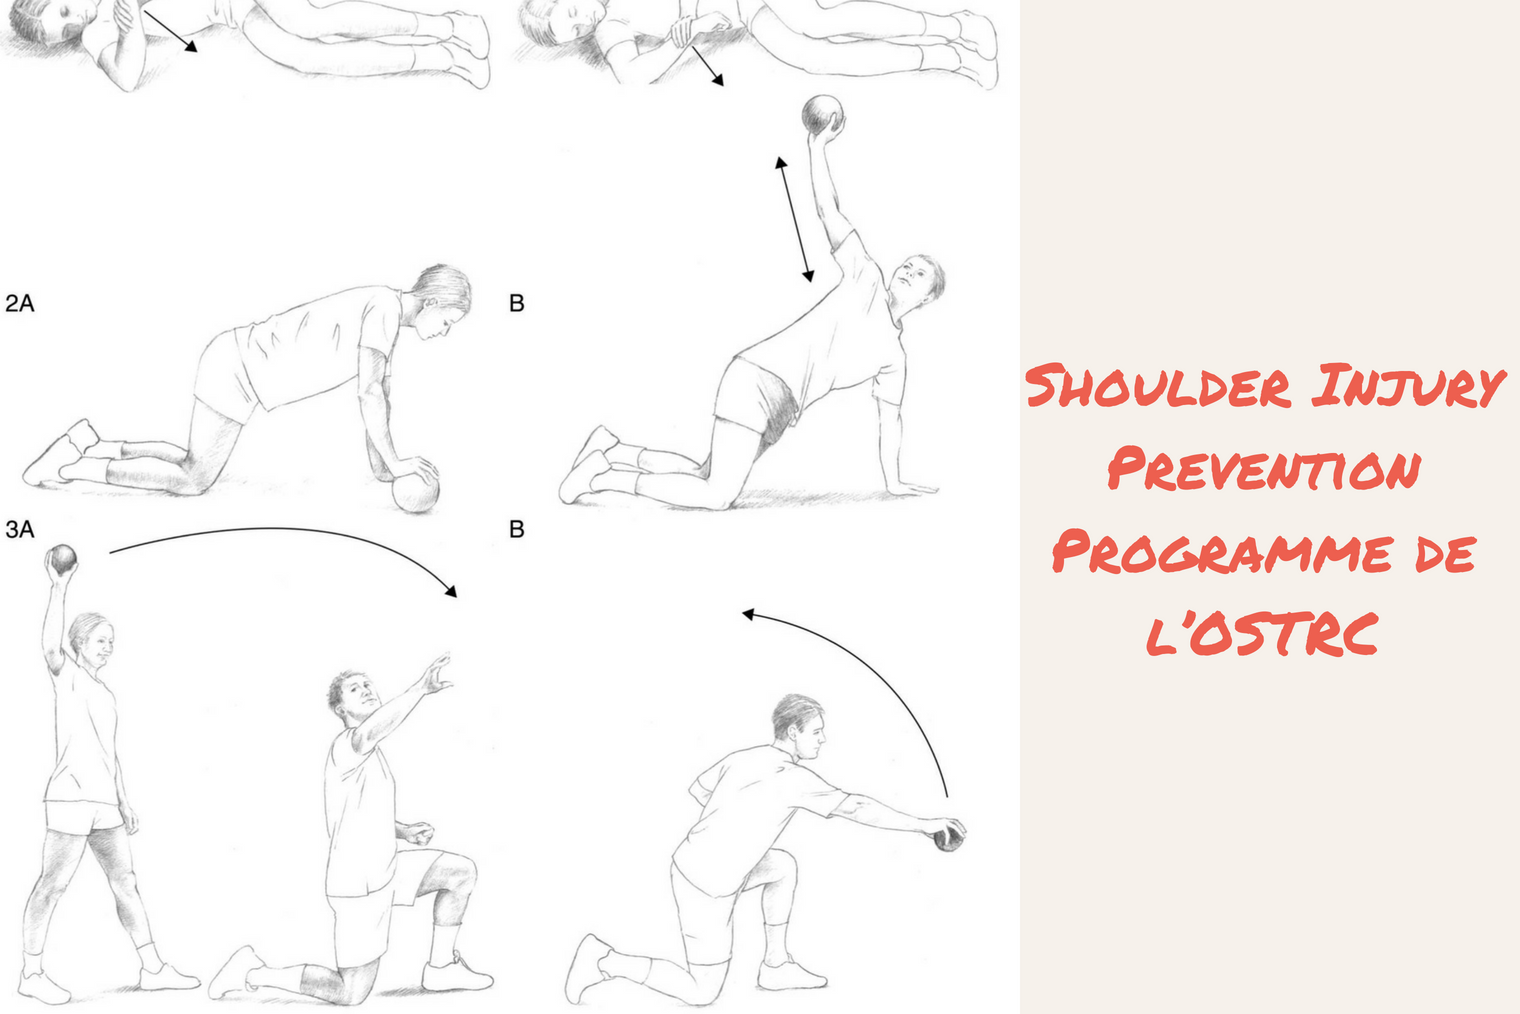 Shoulder injury prevention programme illustration